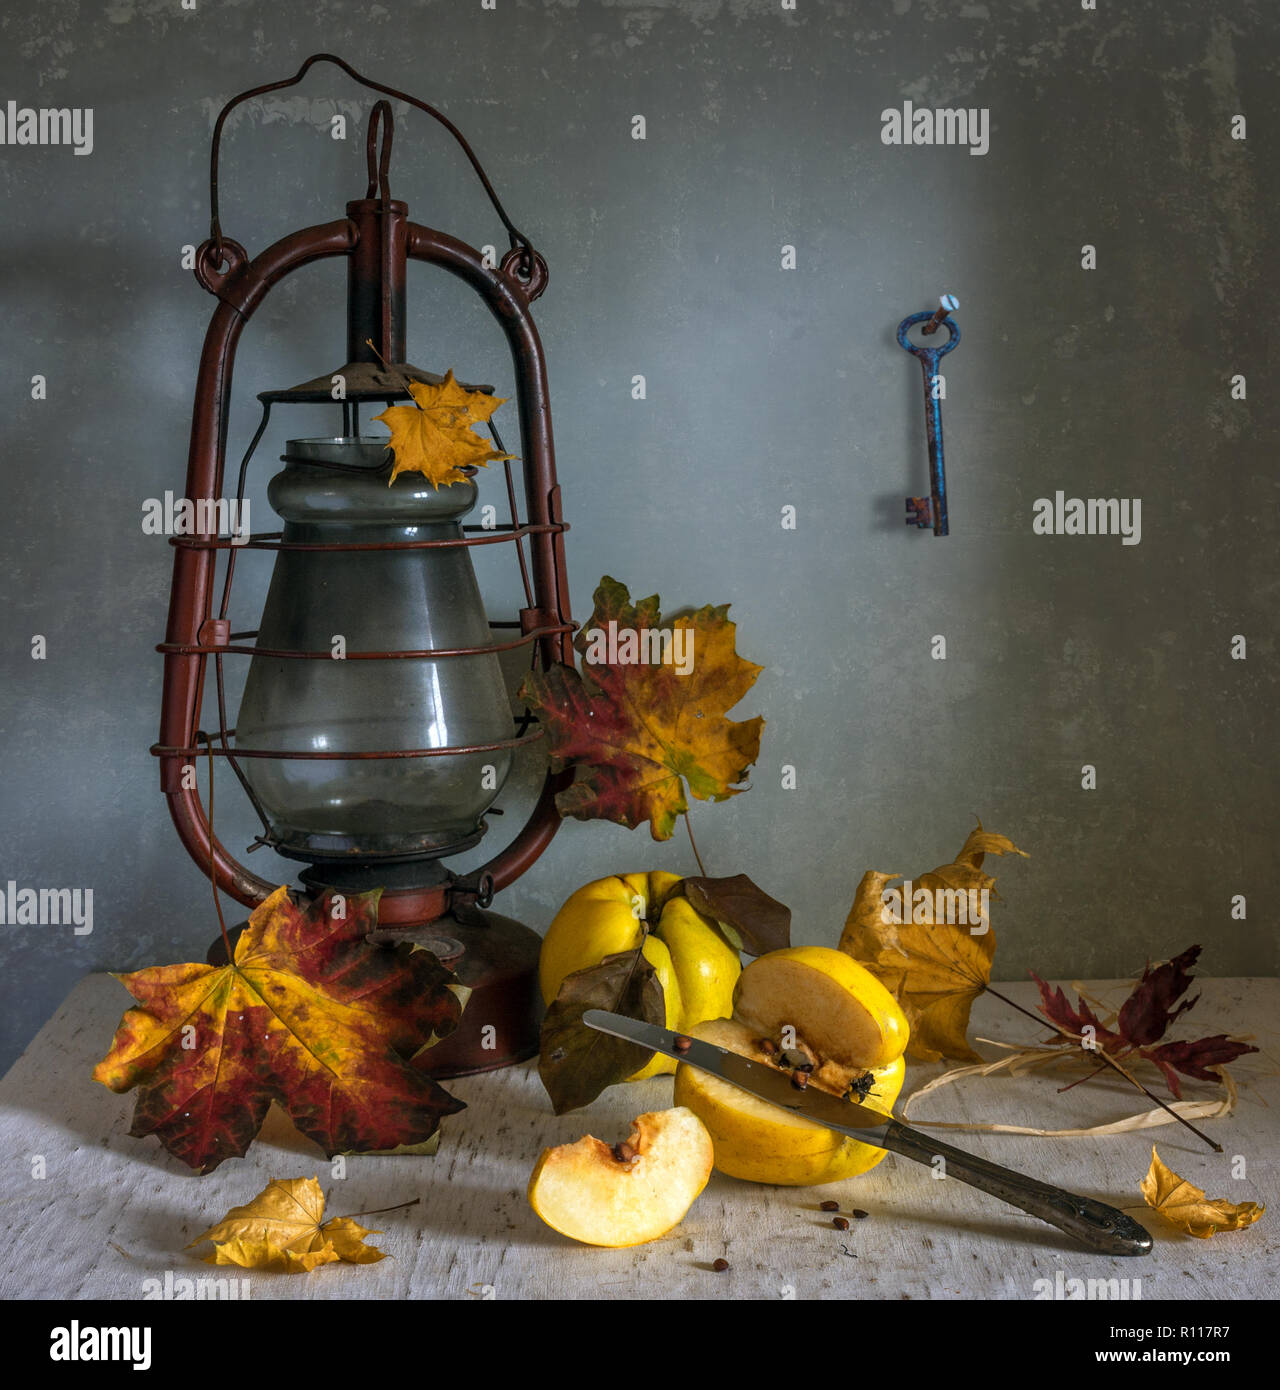 La vie toujours avec le coing, les feuilles d'automne et lampe au kérosène. Vitamines. Choisissez des fruits mûrs. vintage Banque D'Images